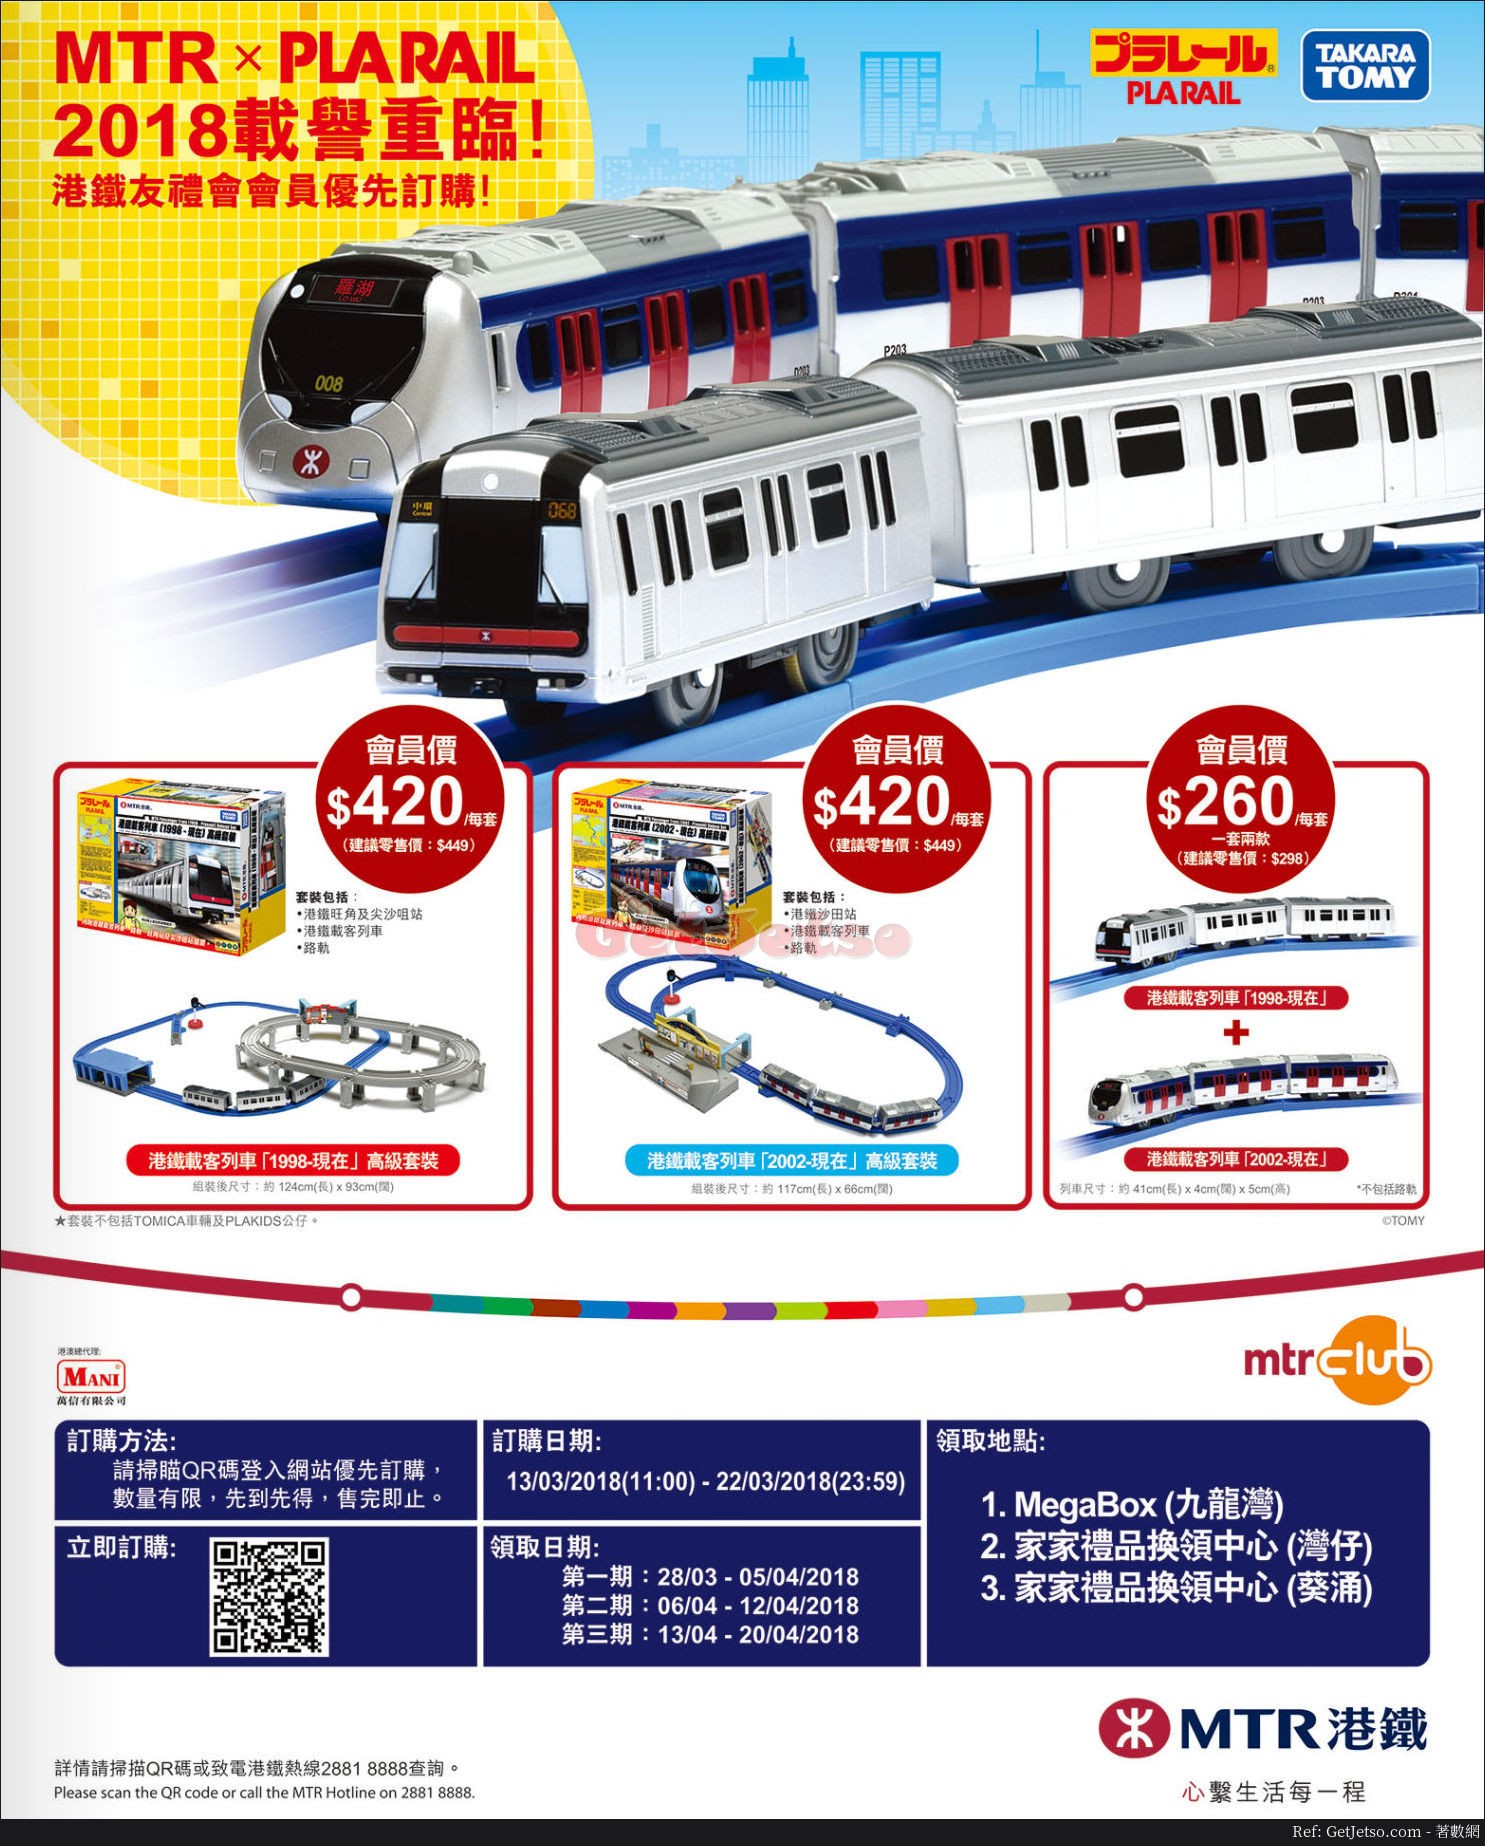 港鐵MTR x PLARAIL 2018會員優先訂購優惠(18年3月13-22日)圖片1